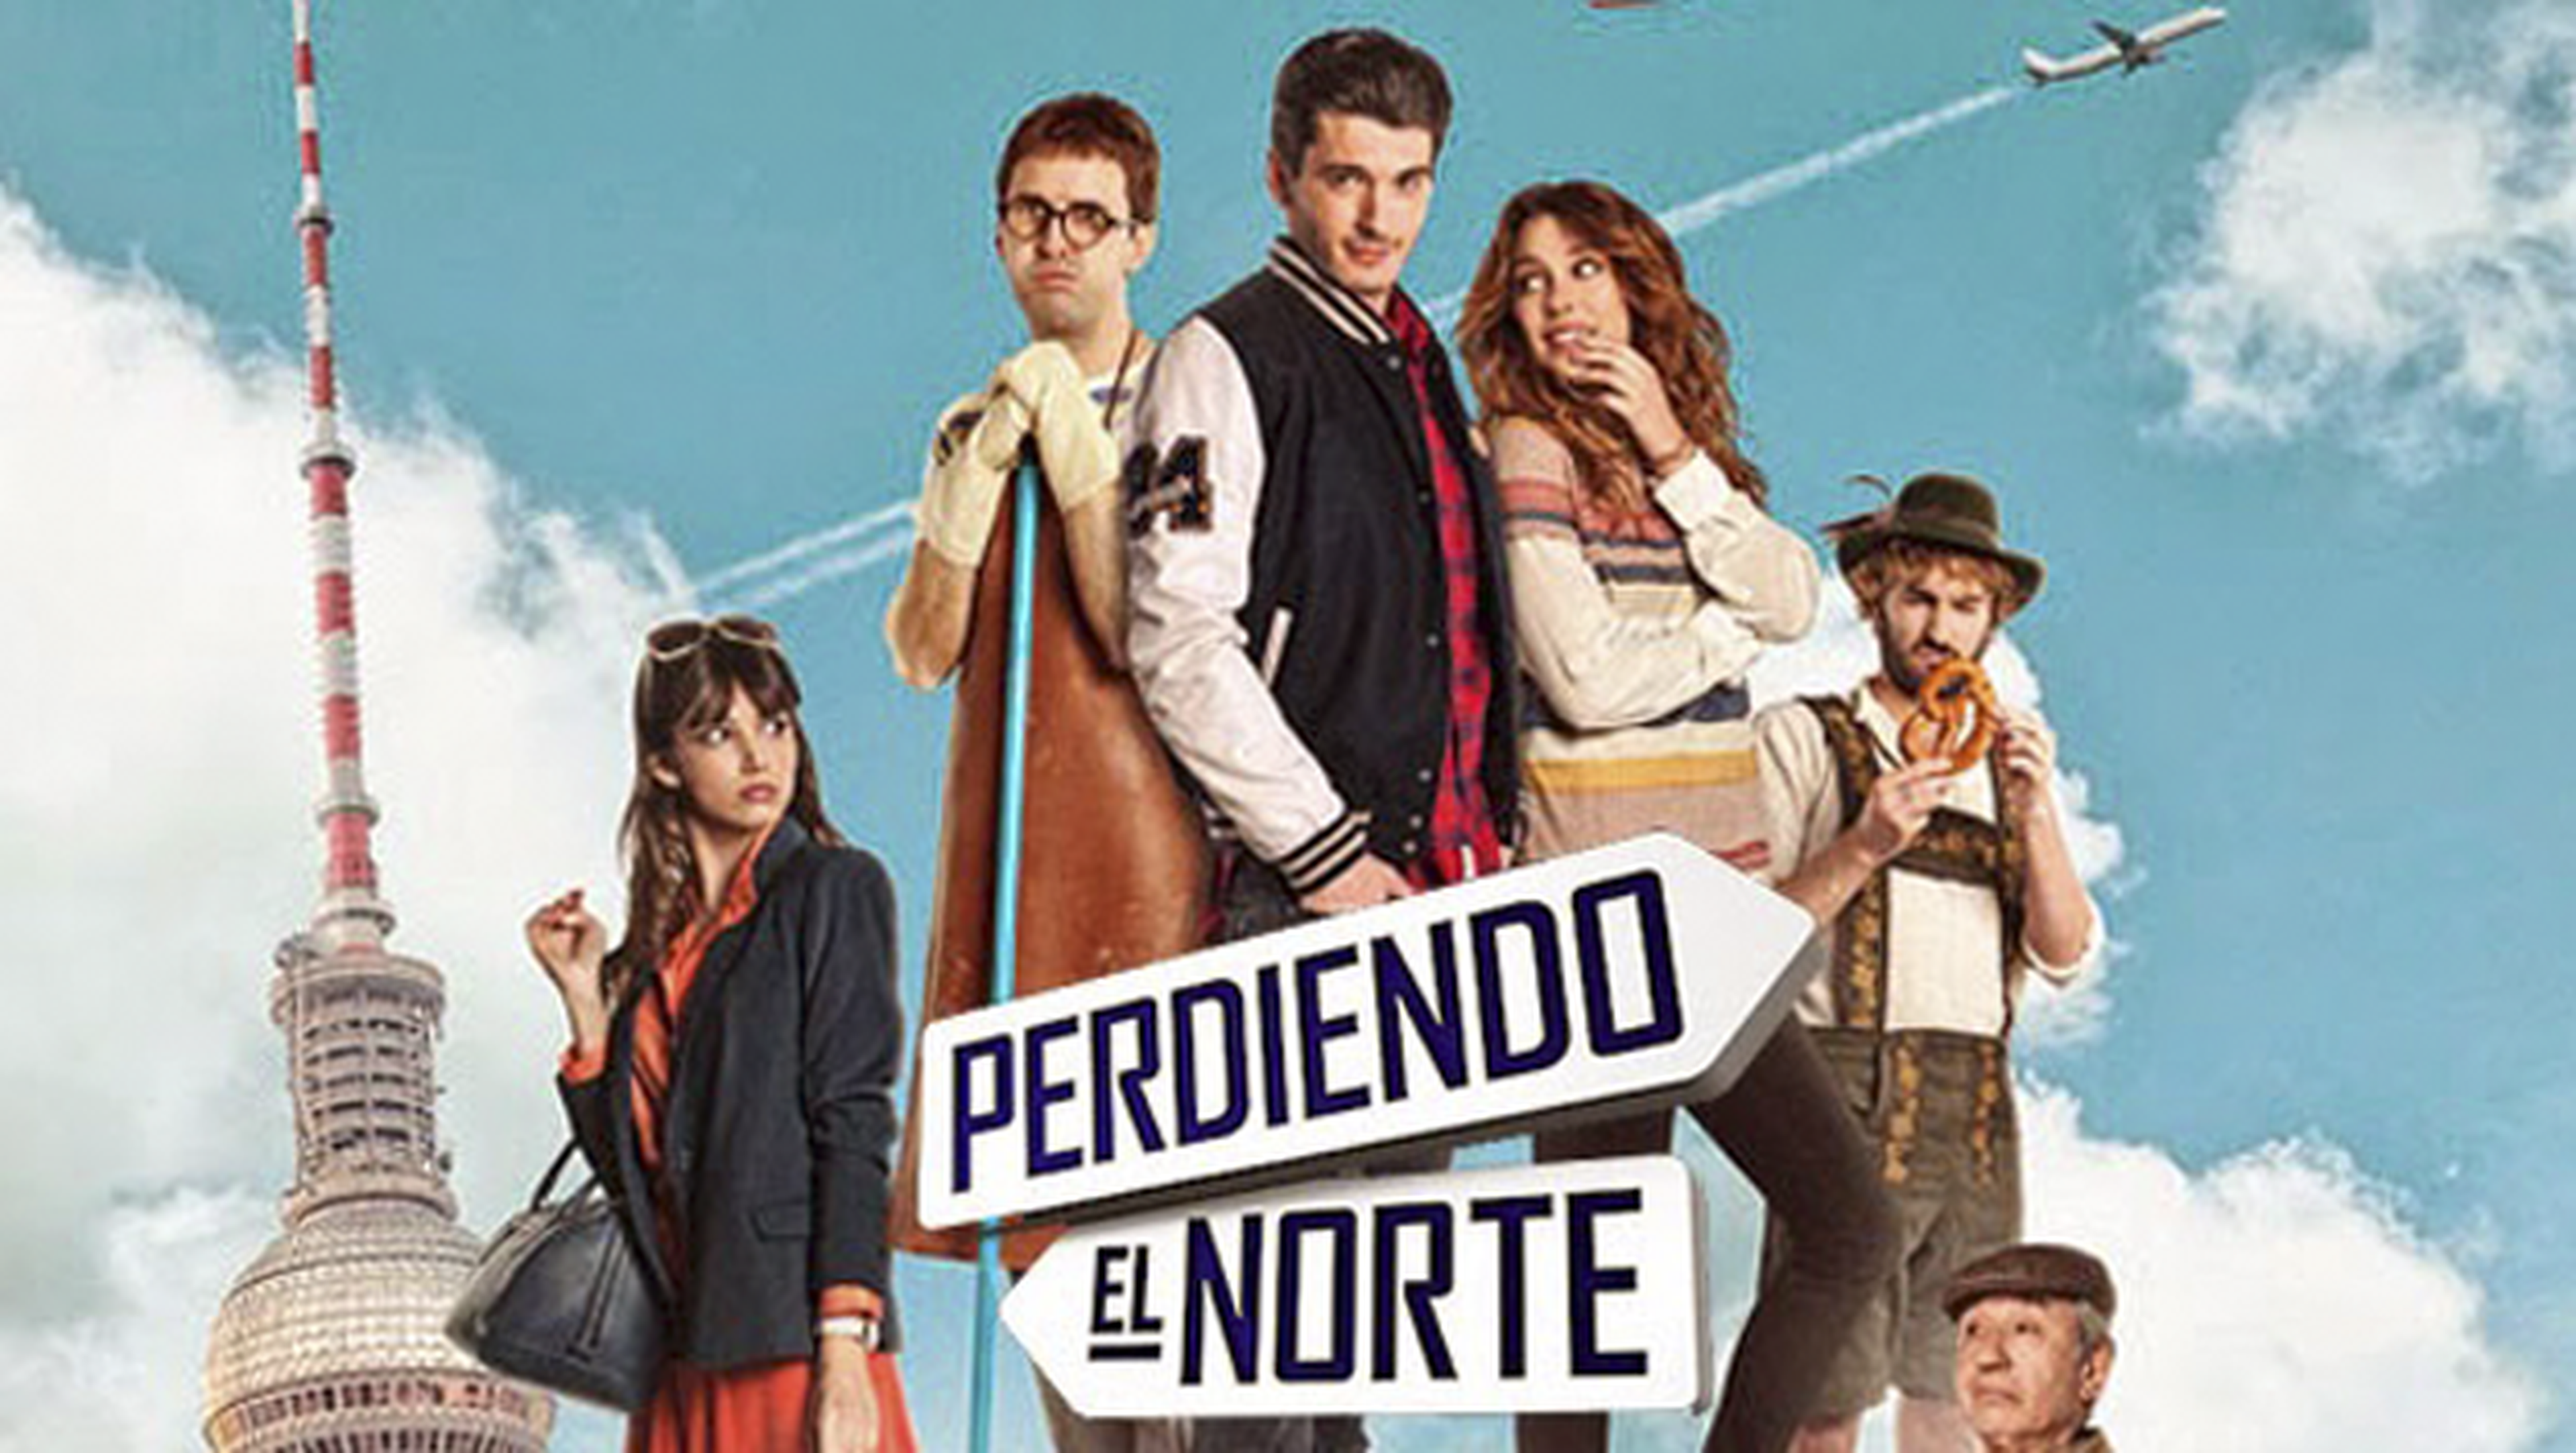 Perdiendo el norte, mejor película española de Netflix